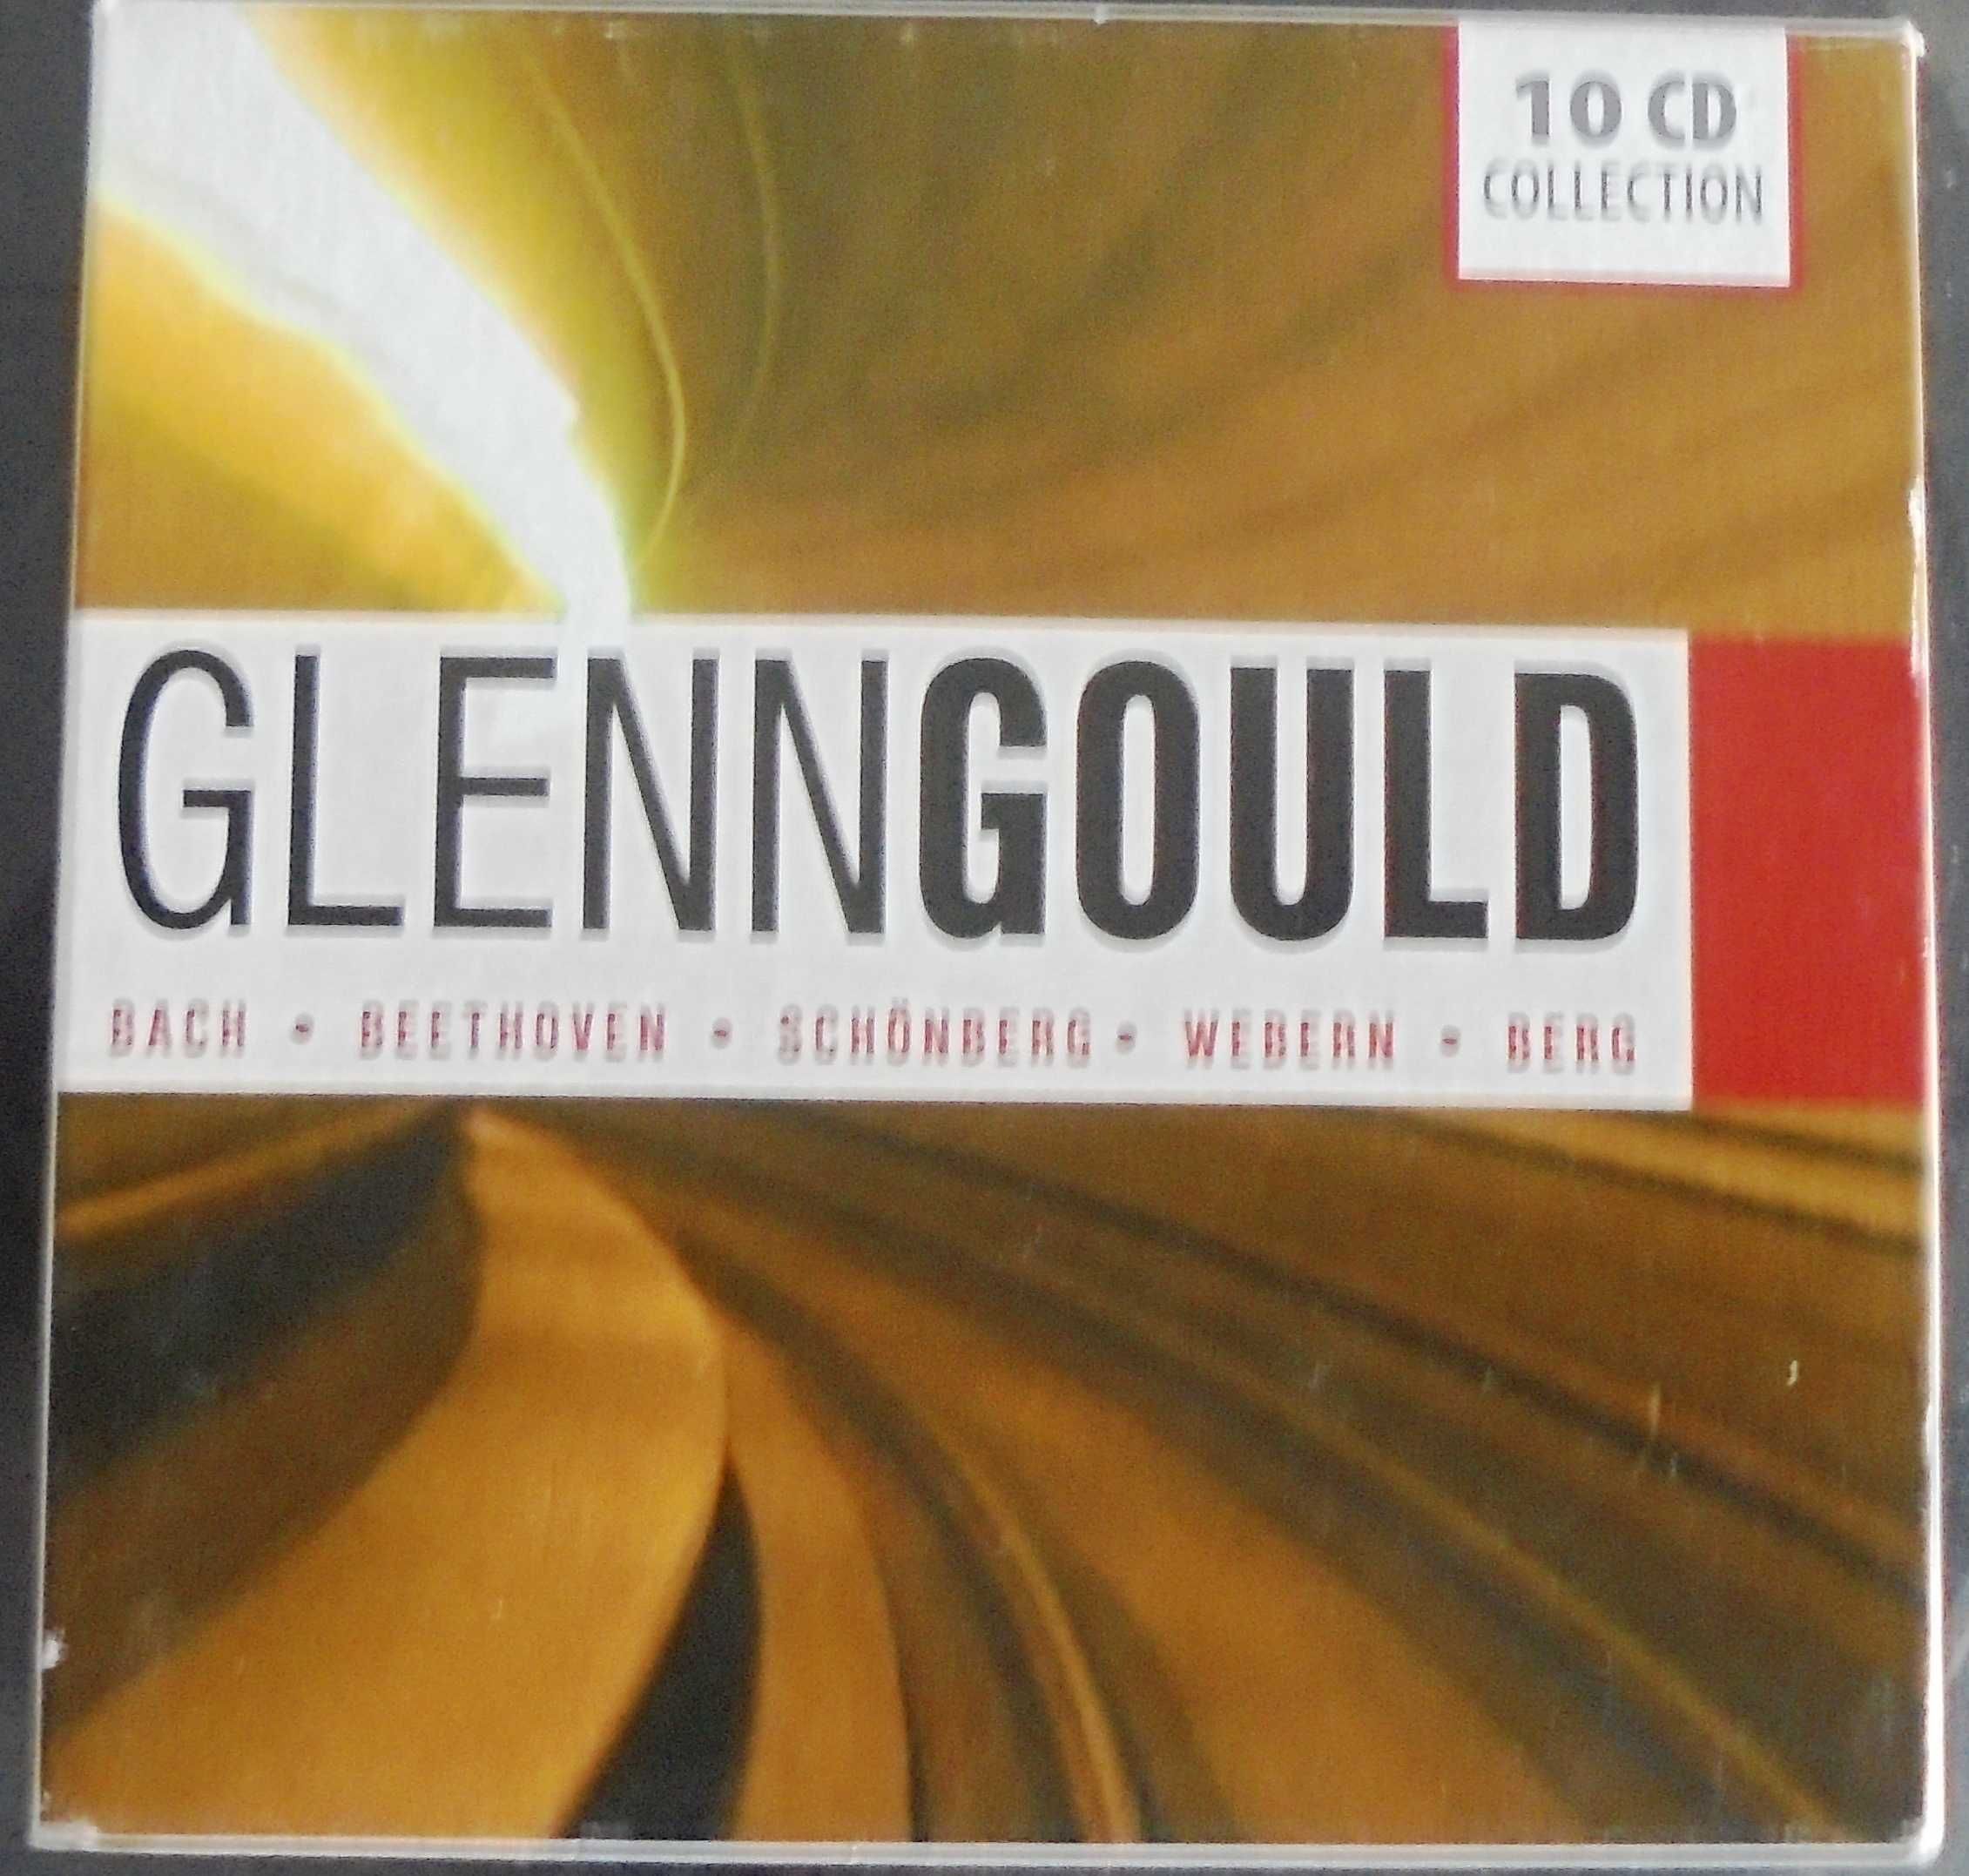 Vand un box cu 10 CD cu  Glenn Gould- discuri originale